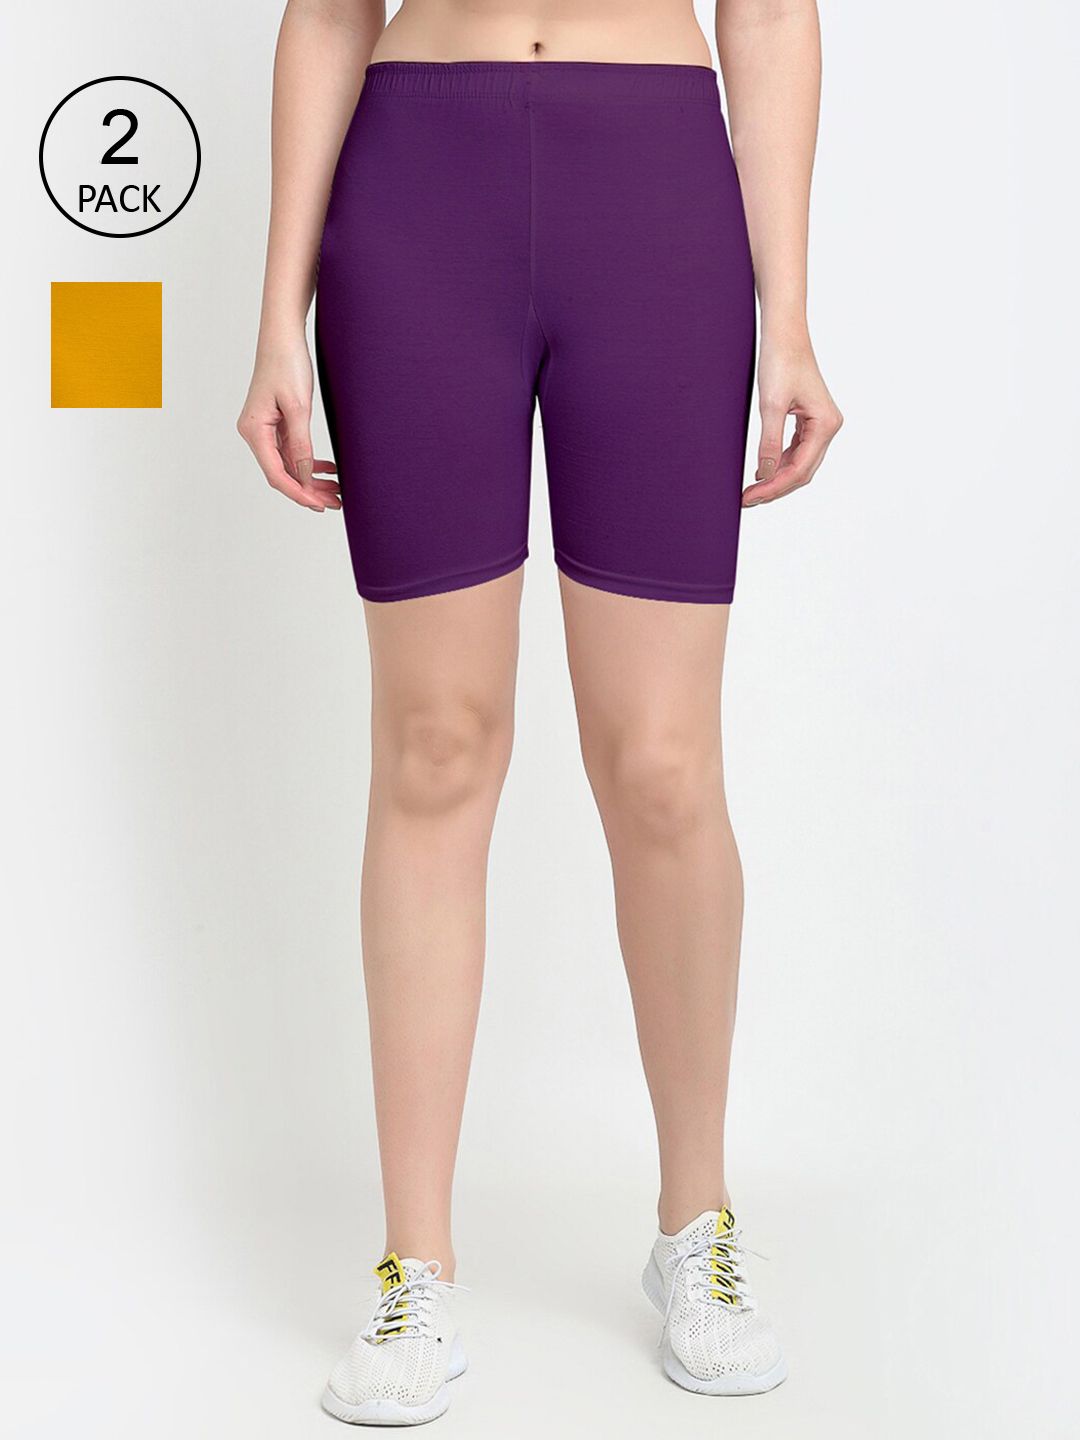 GRACIT Women Pack of 2 Purple & Mustard Yellow Biker Shorts Price in India